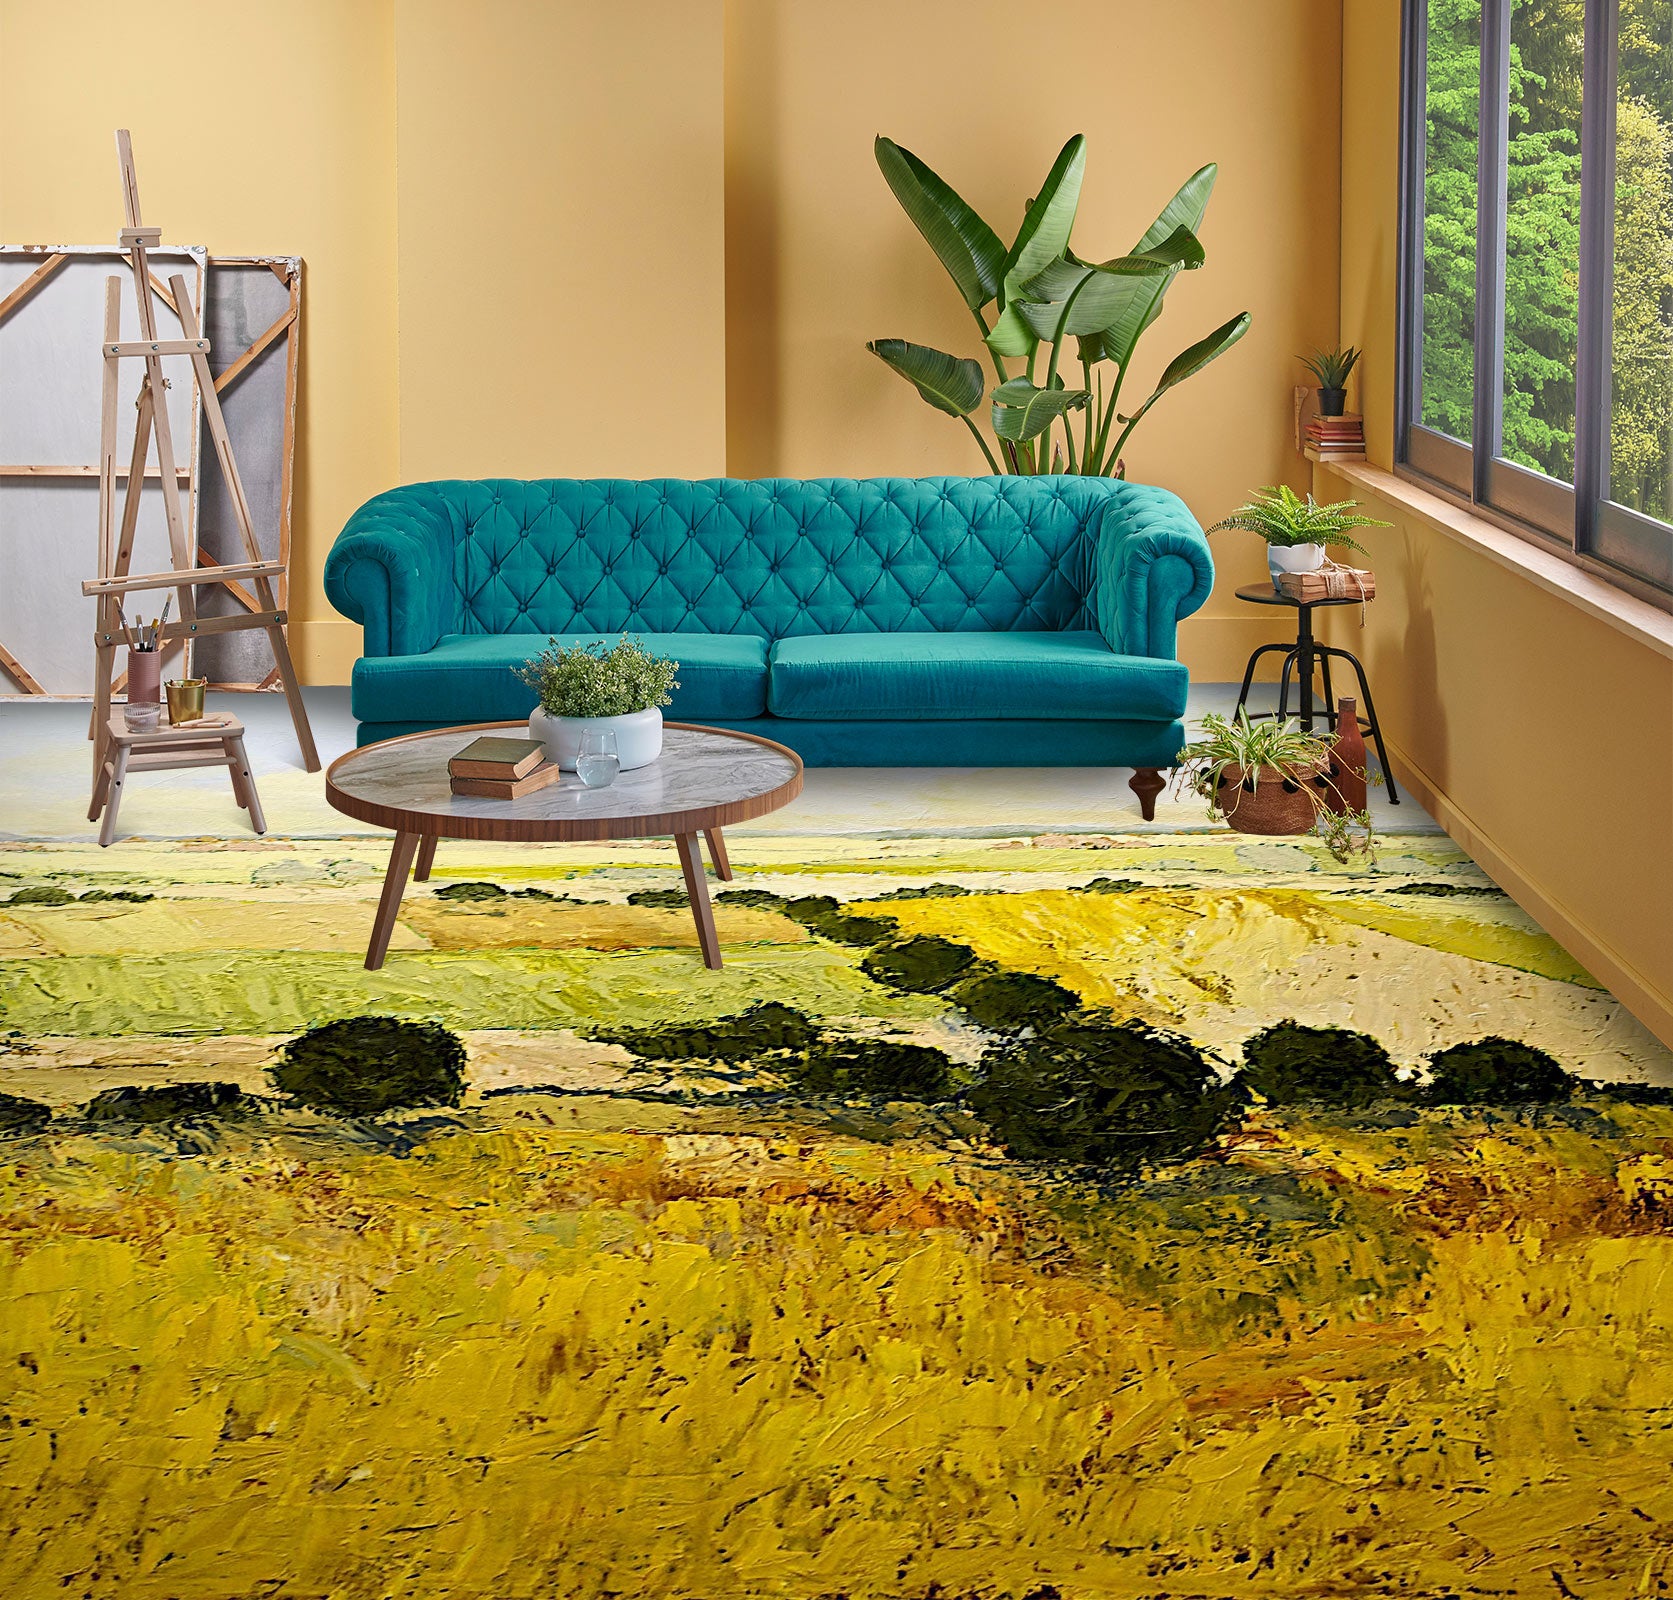 3D Golden Grass 9521 Allan P. Friedlander Floor Mural